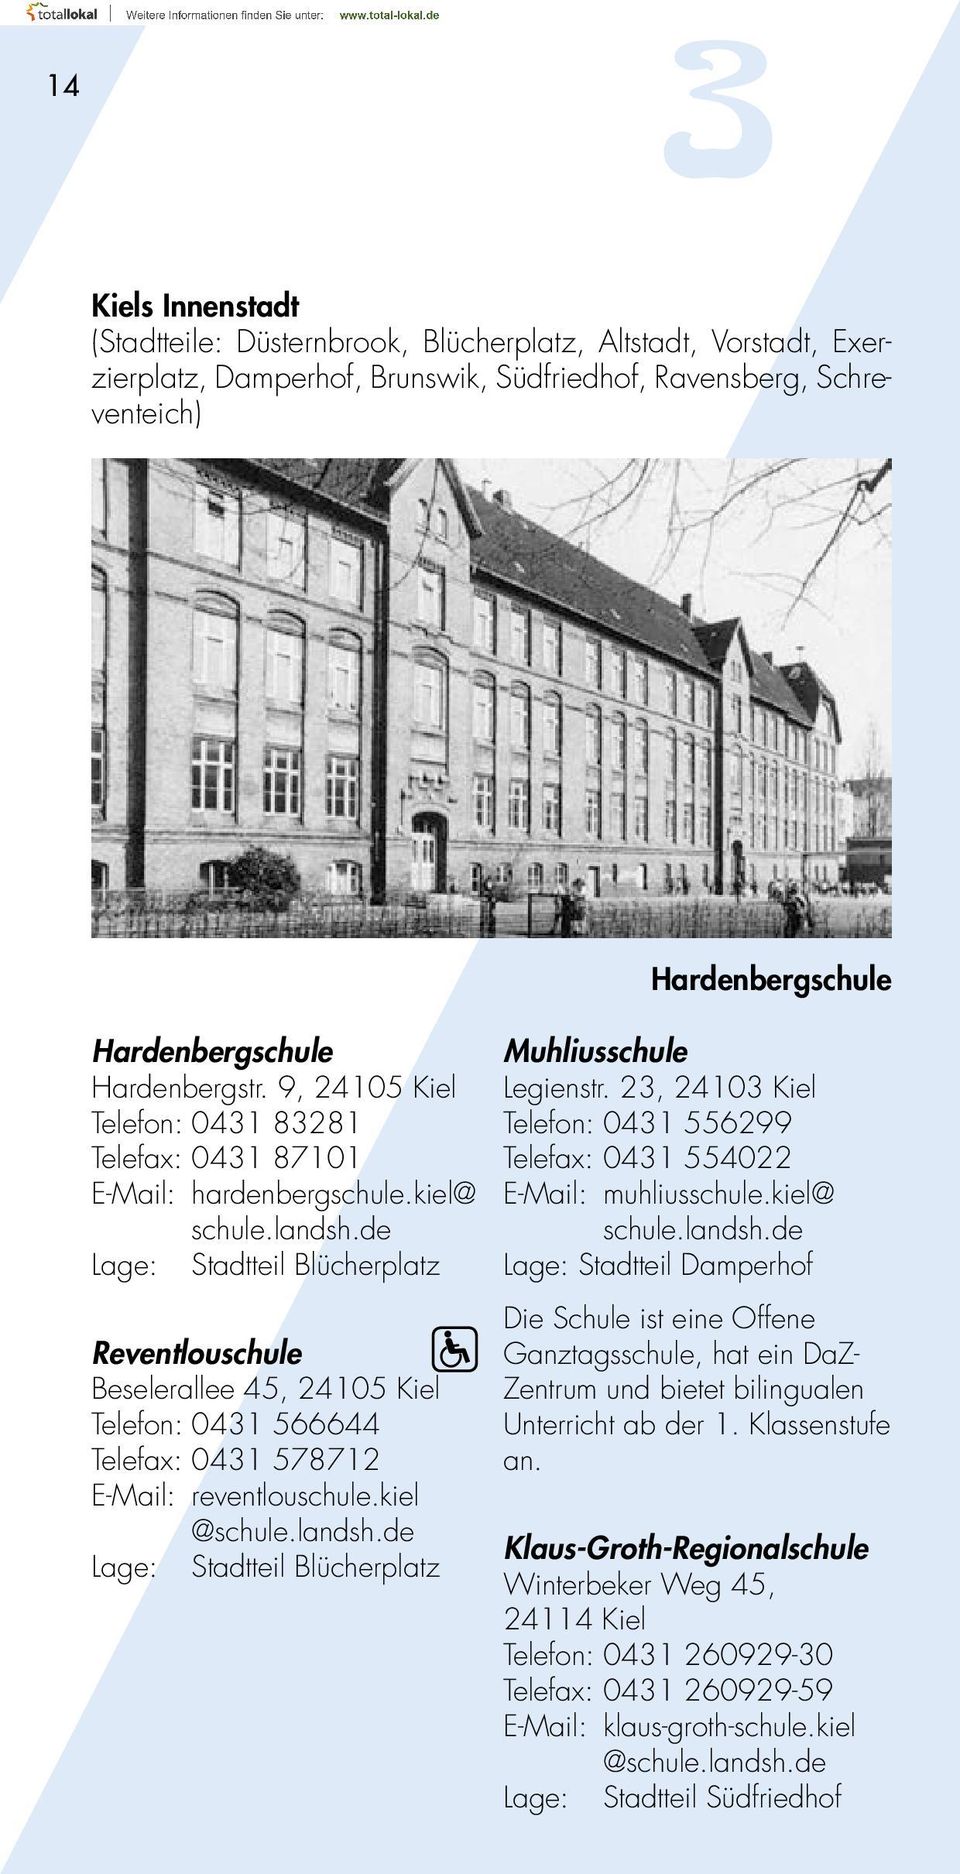 de Lage: Stadtteil Blücherplatz Reventlouschule Beselerallee 45, 24105 Kiel Telefon: 0431 566644 Telefax: 0431 578712 E-Mail: reventlouschule.kiel @schule.landsh.